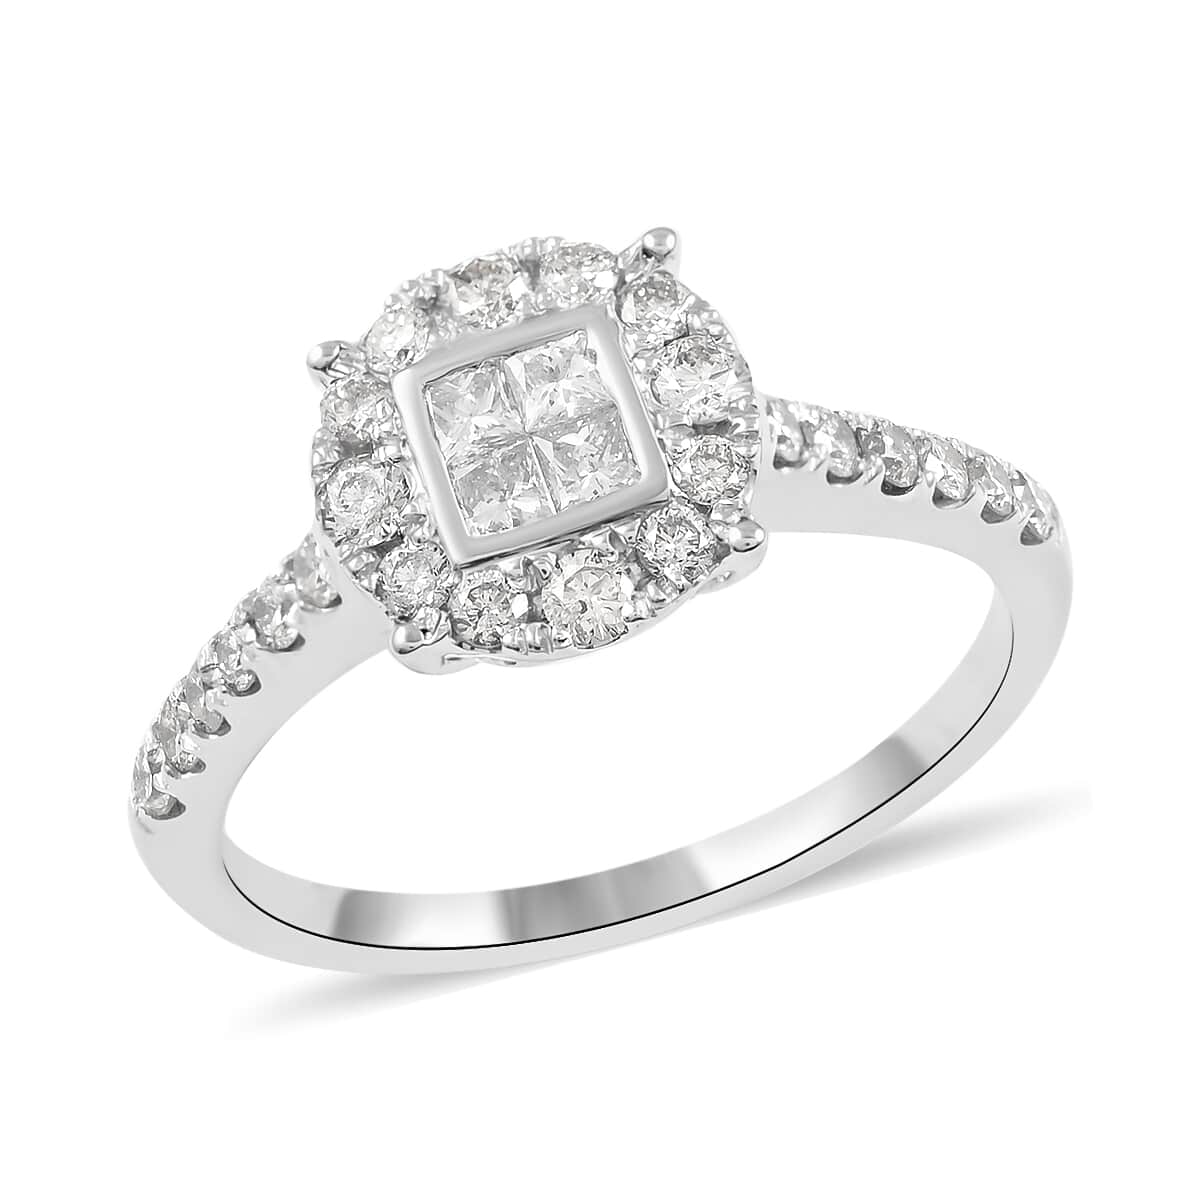 10K White Gold Diamond I-J I1 Ring (Size 7.0) 2.75 Grams 0.75 ctw image number 0